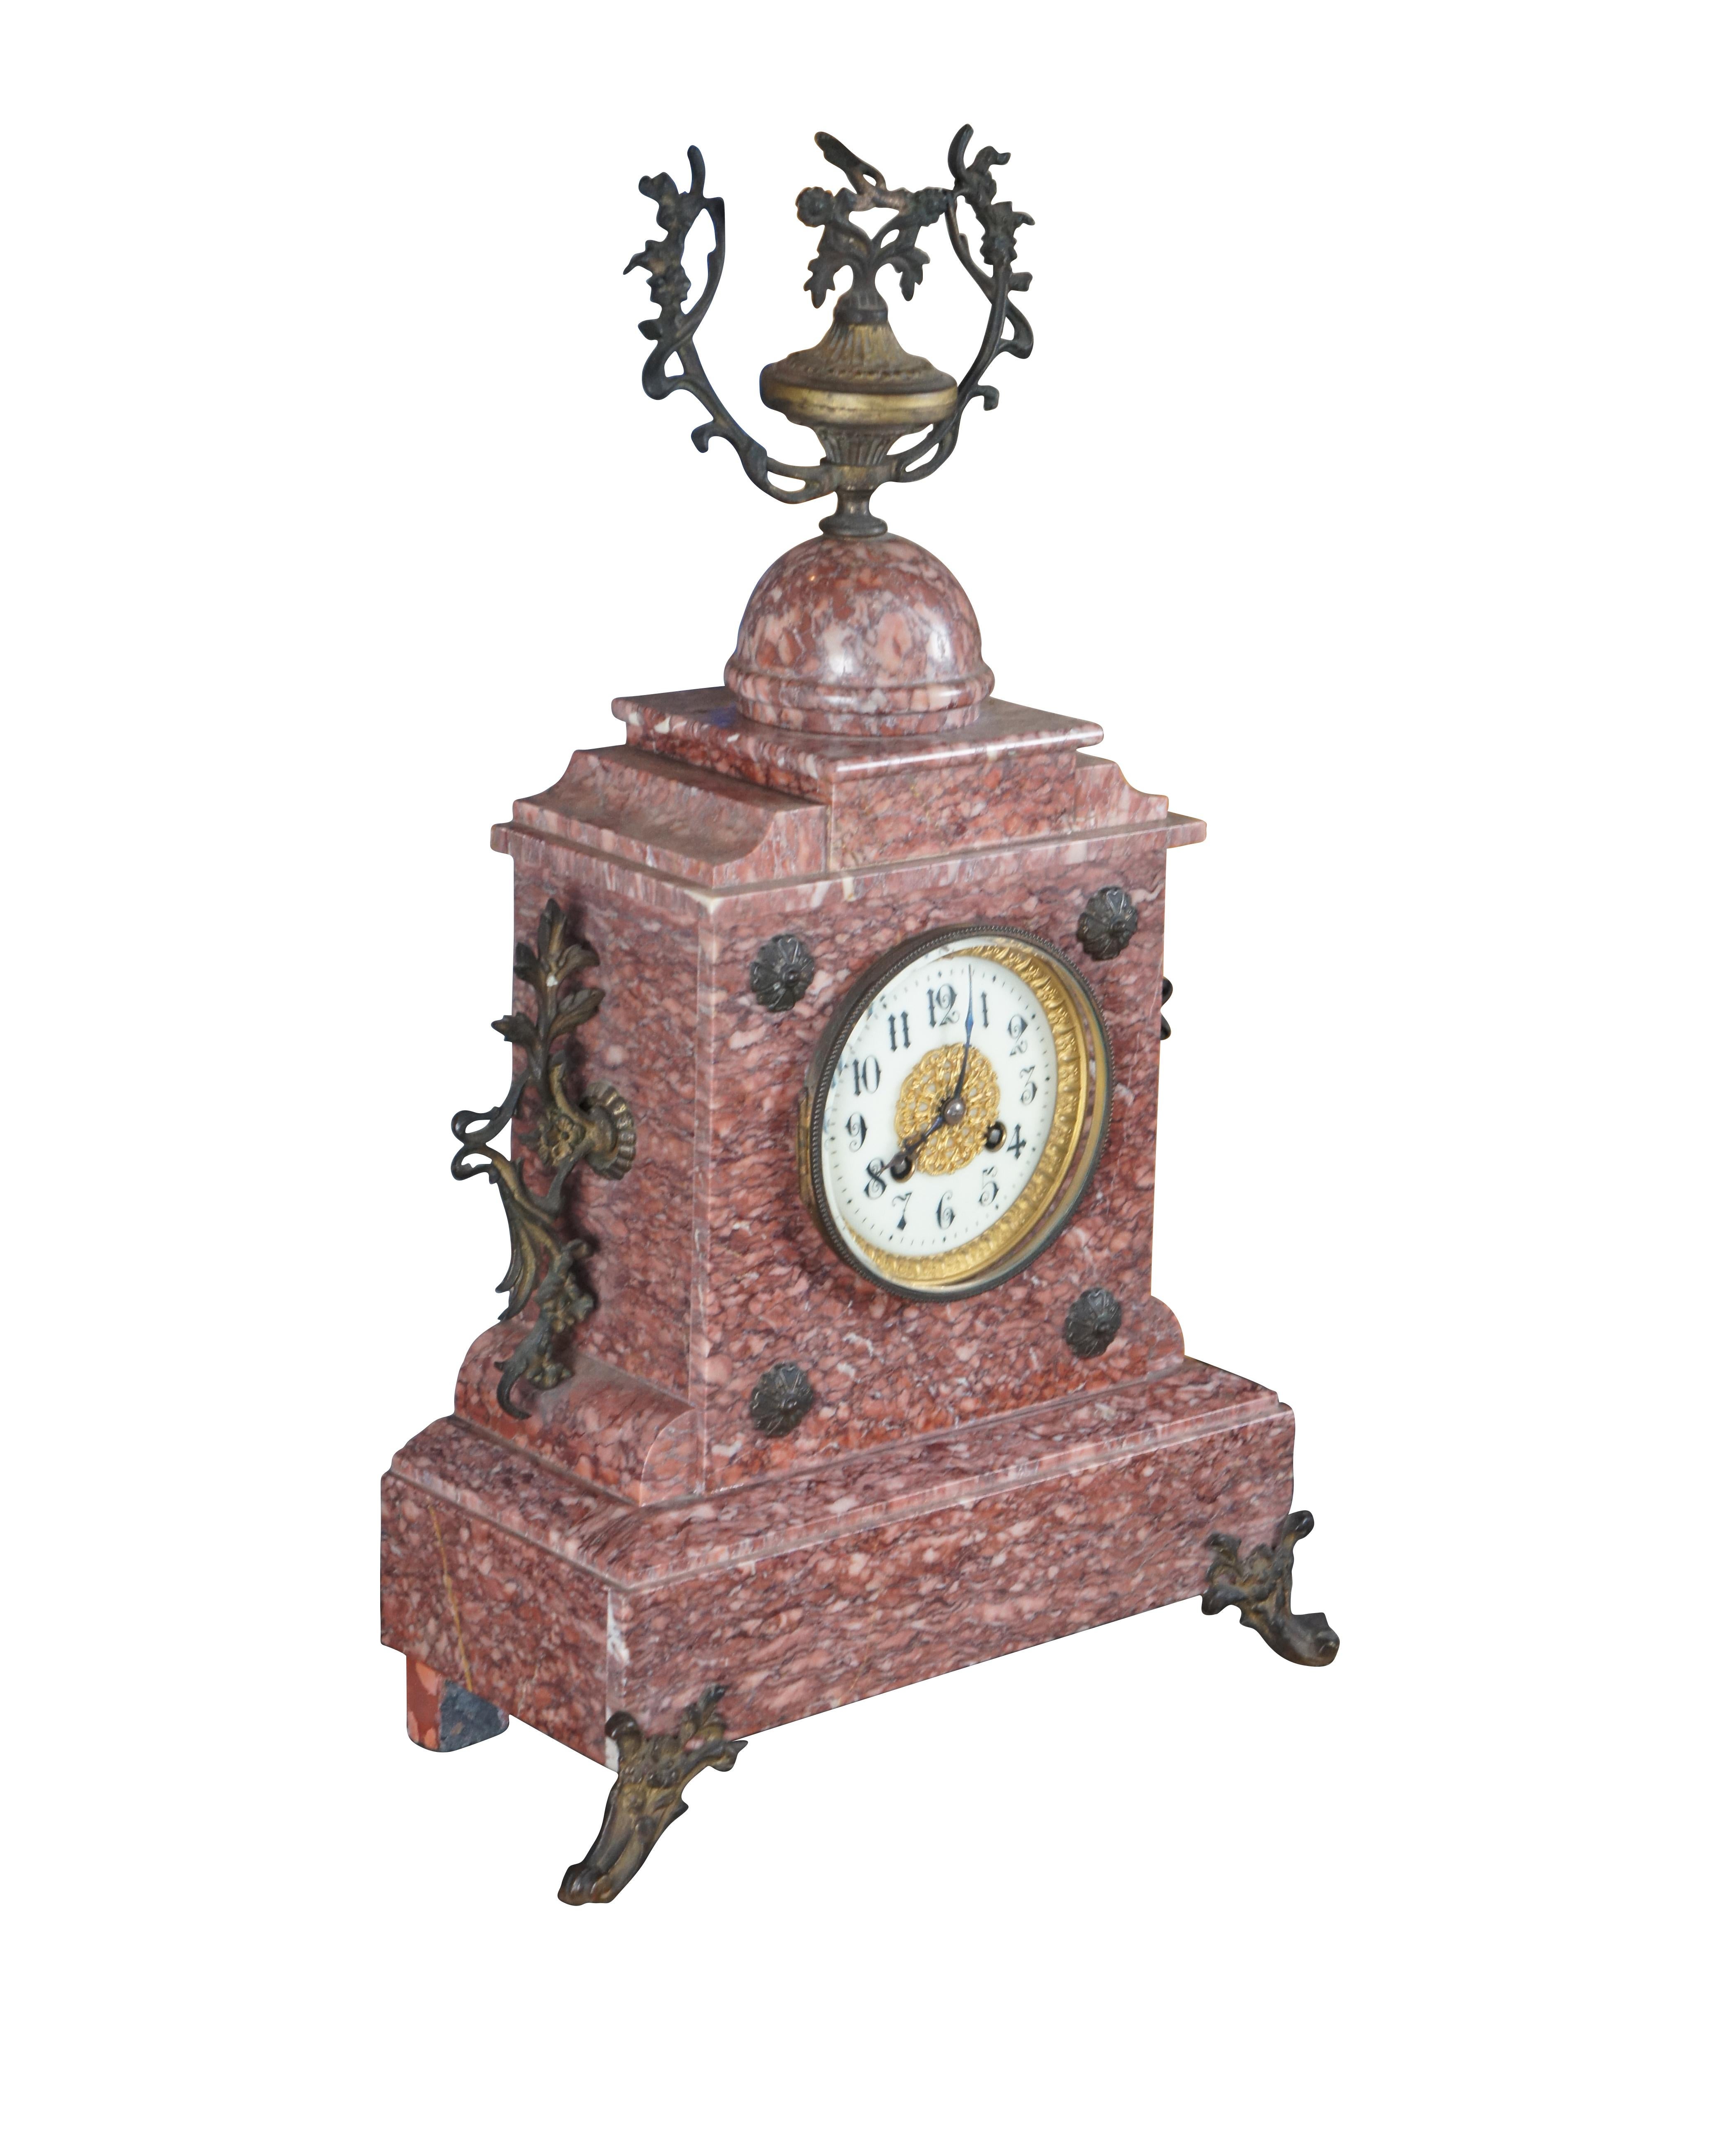 Une ancienne horloge de cheminée du 19ème siècle. Réalisé en marbre rouge et bronze doré. Orné d'une face en filigrane d'or, il repose sur une base à gradins et sur des pieds en demi-lune. Elle est ornée de médaillons sur le devant et de motifs en